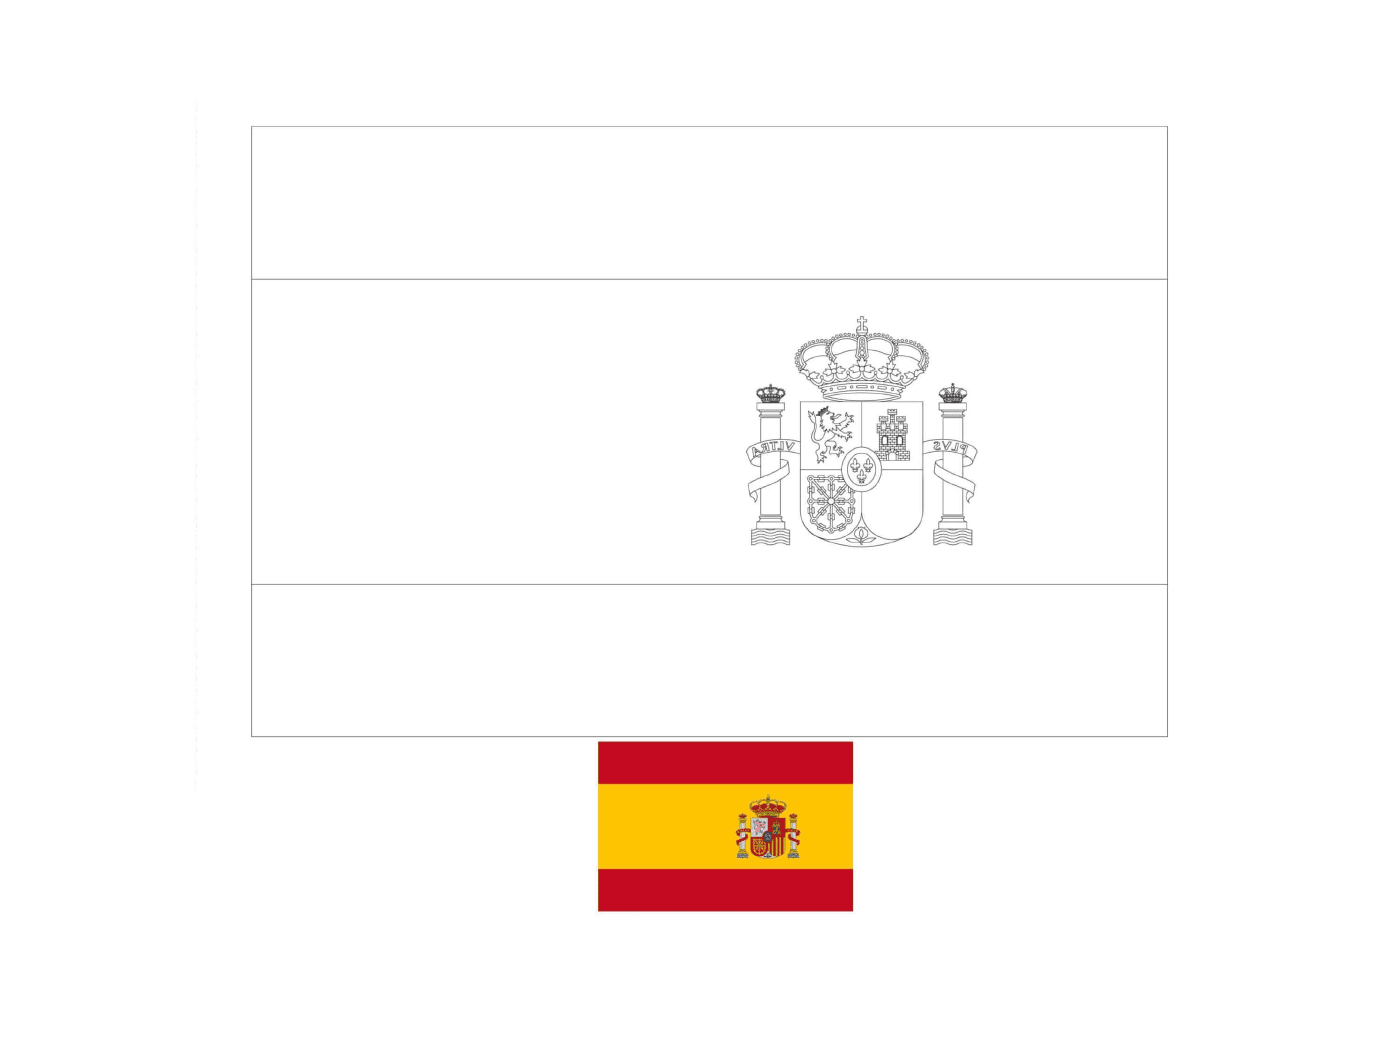  स्पेन का फ्लैग जो रंगों के साथ बनाया गया है 